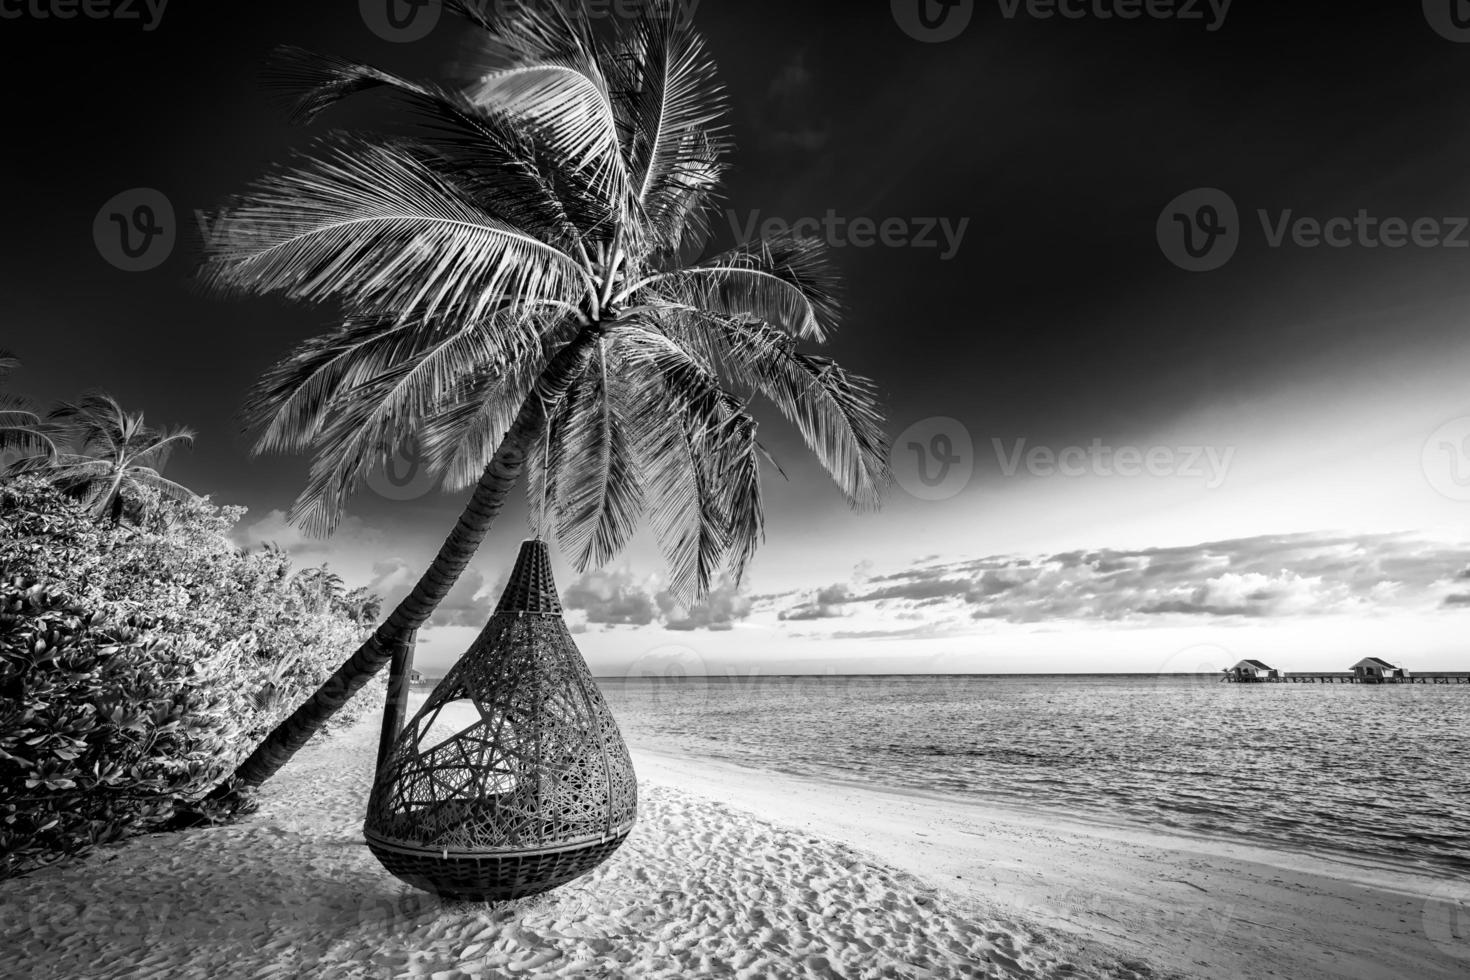 tranquilo proceso de naturaleza minimalista en blanco y negro. playa artística palmeras cielo oscuro, luz solar. patrón de fondo de viaje monocromo abstracto. cocoteros verano oscuro dramático meditación energía foto